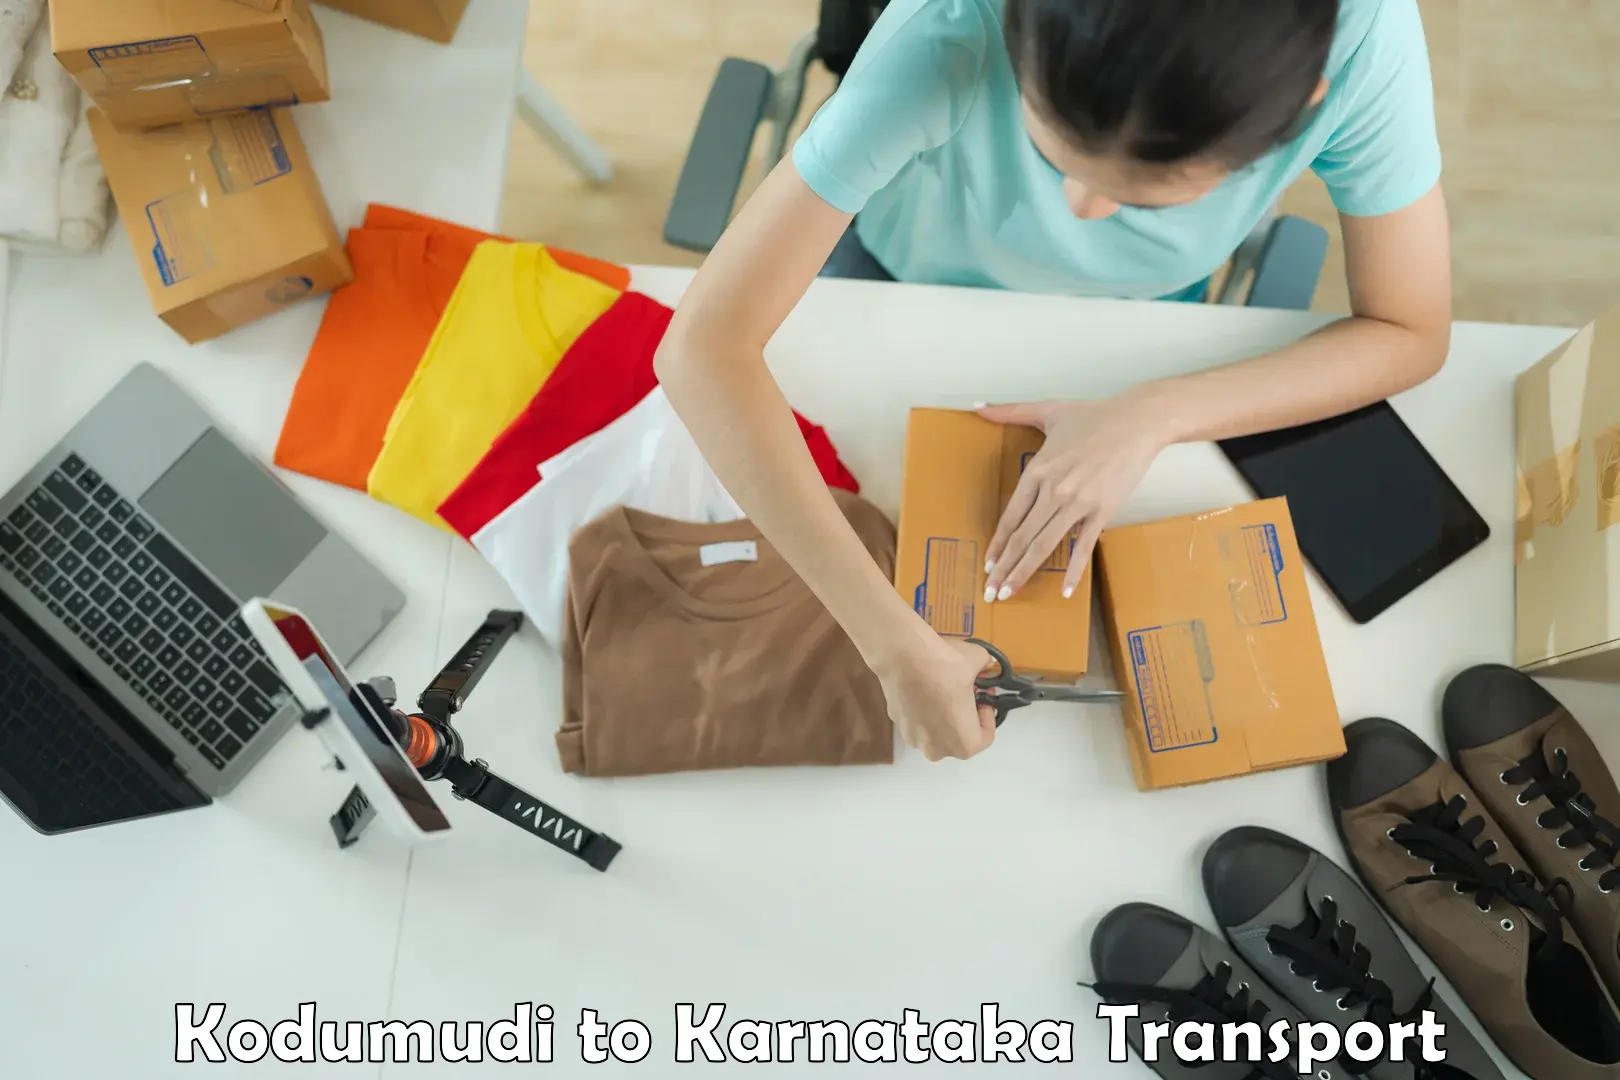 Shipping partner Kodumudi to Kushtagi